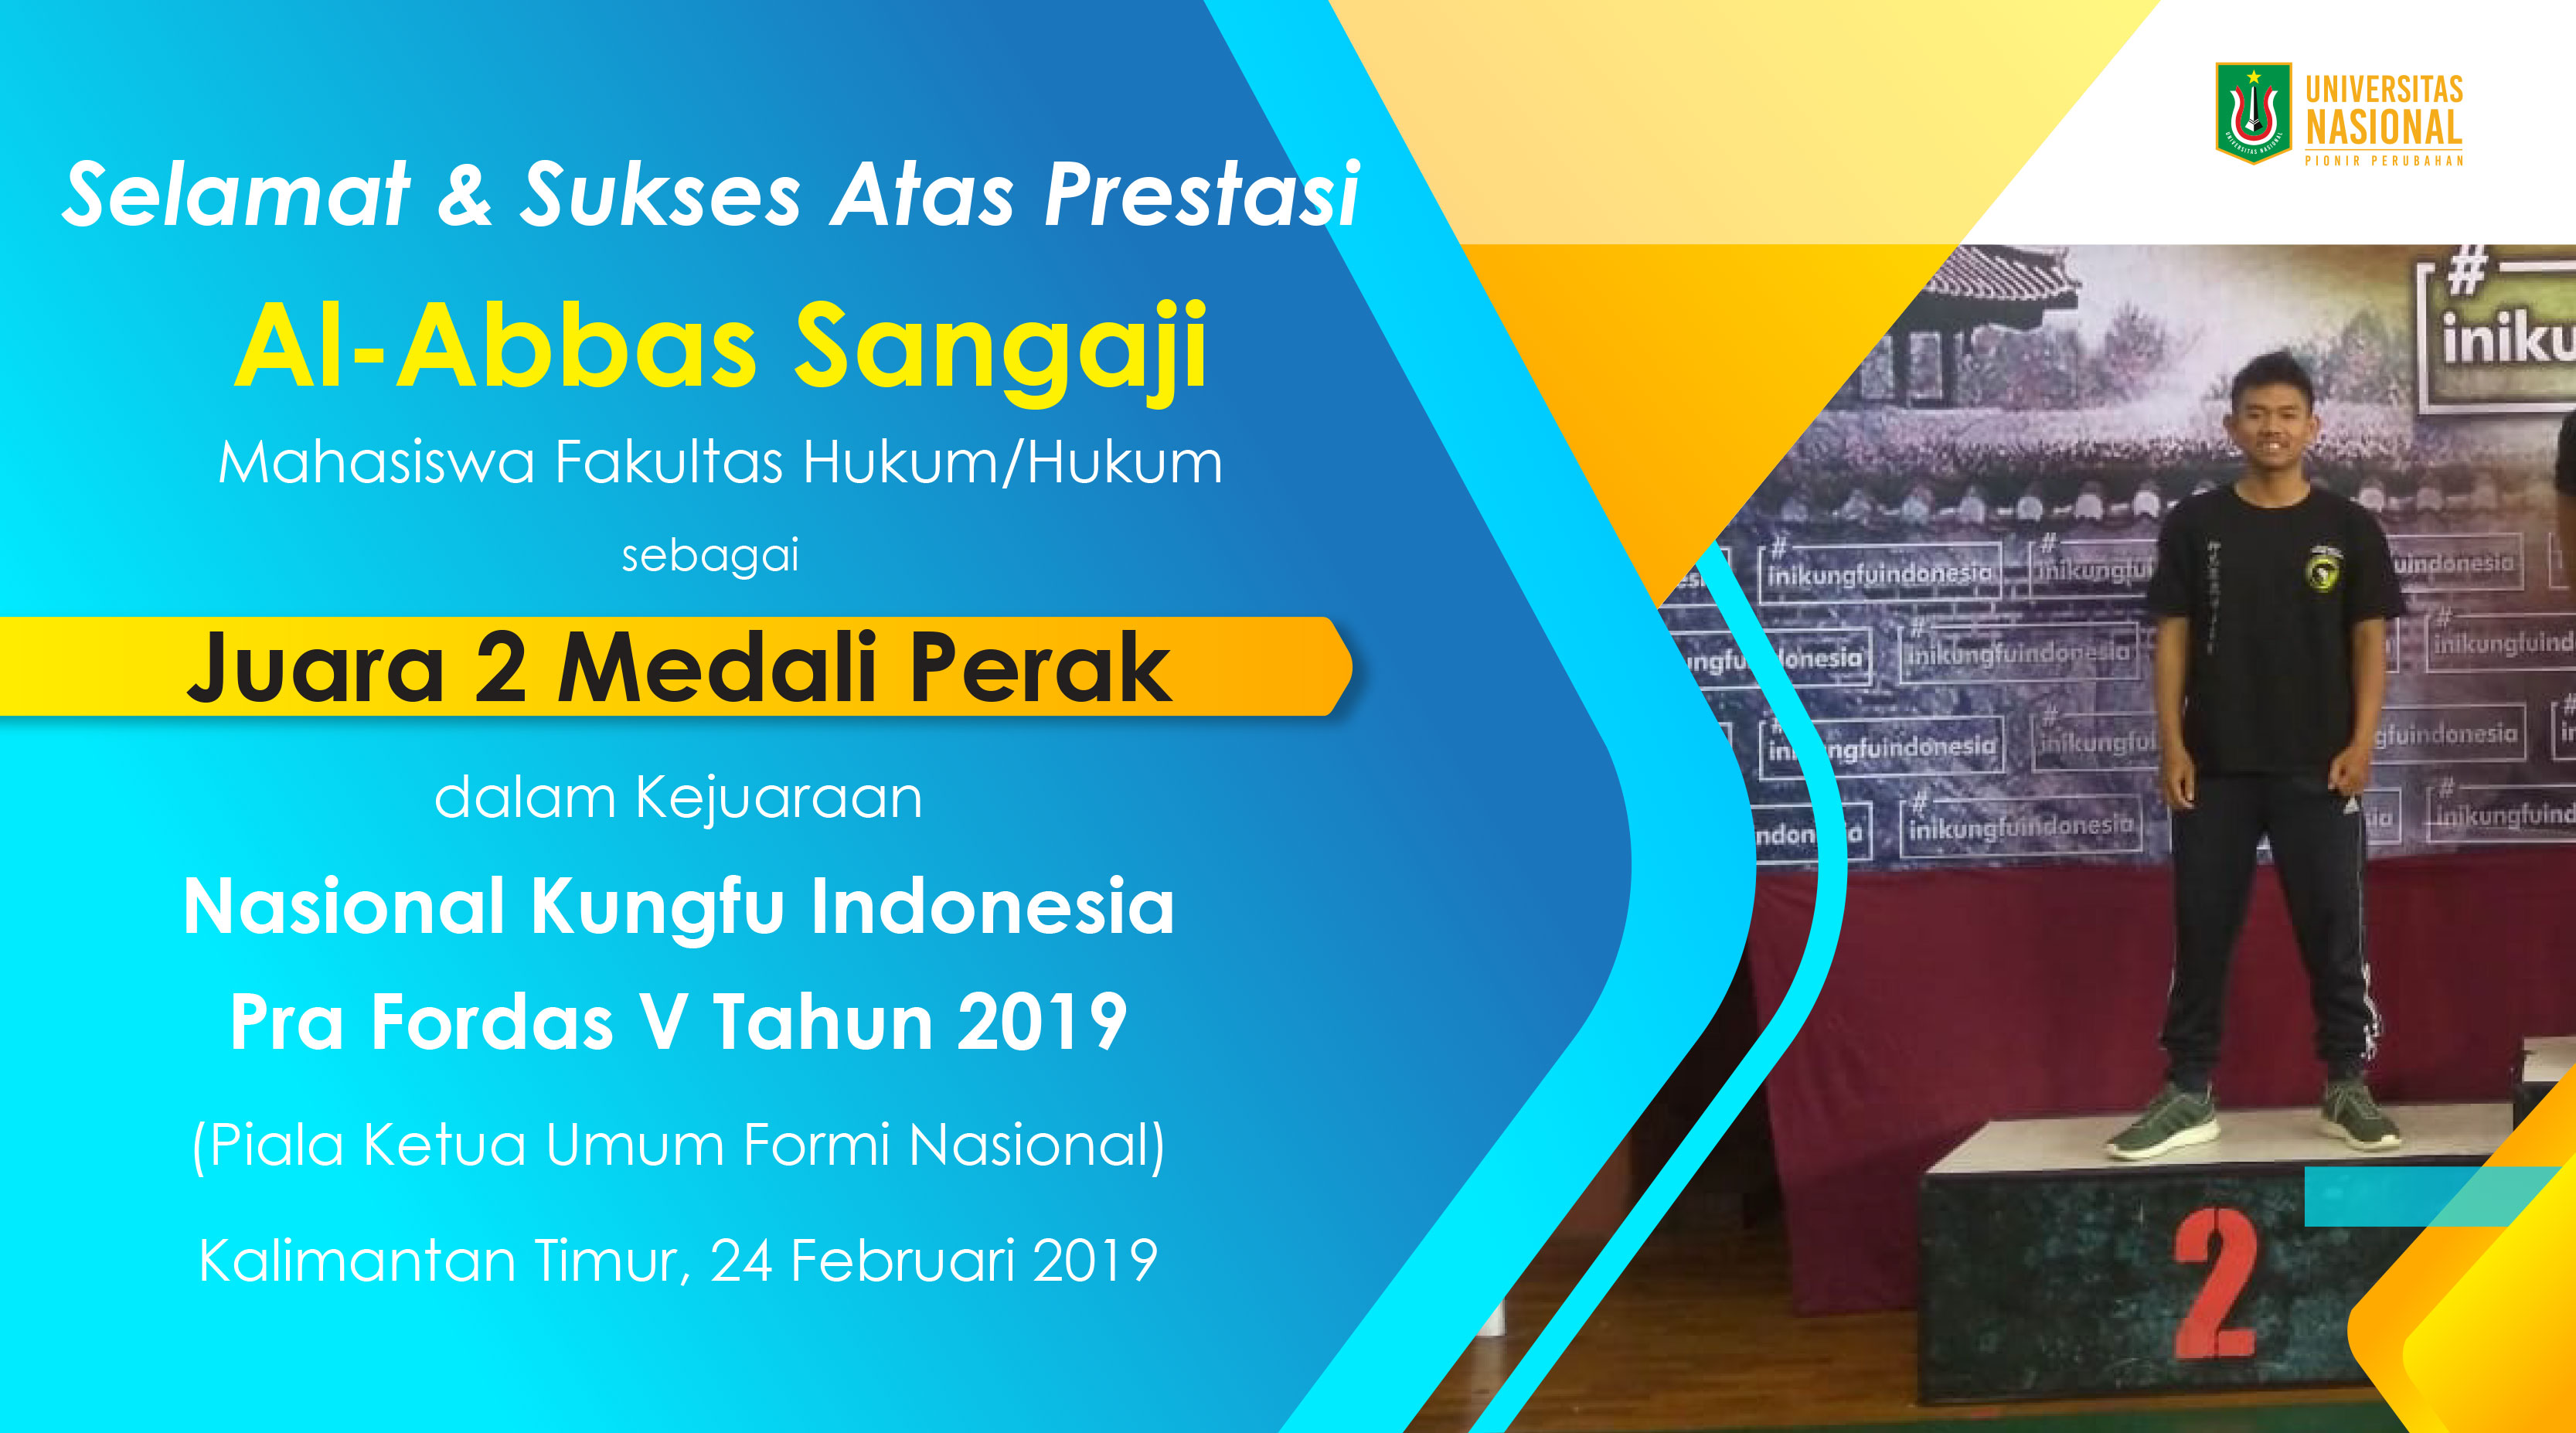 Prestasi Mahasiswa dalam Nasional Kungfu Indonesia Pra Fordas V Tahun 2019